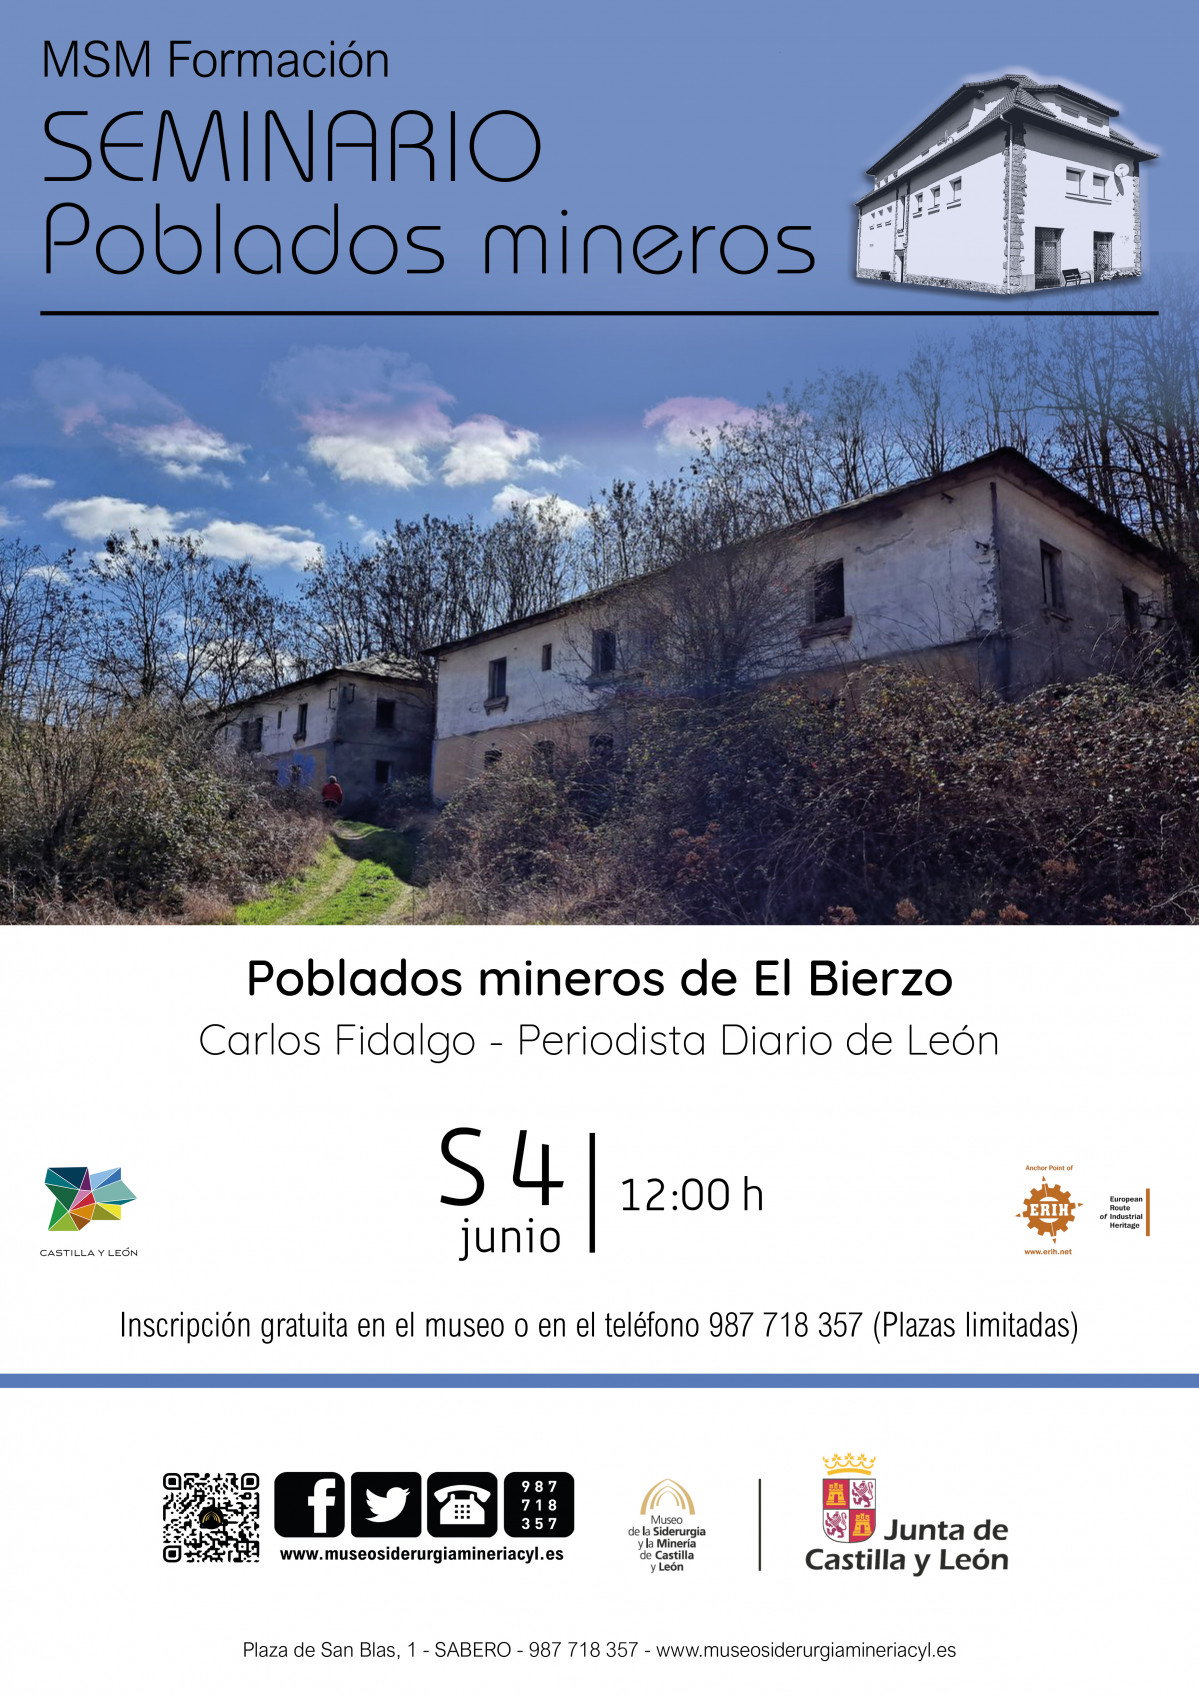 Poblados mineros de El Bierzo